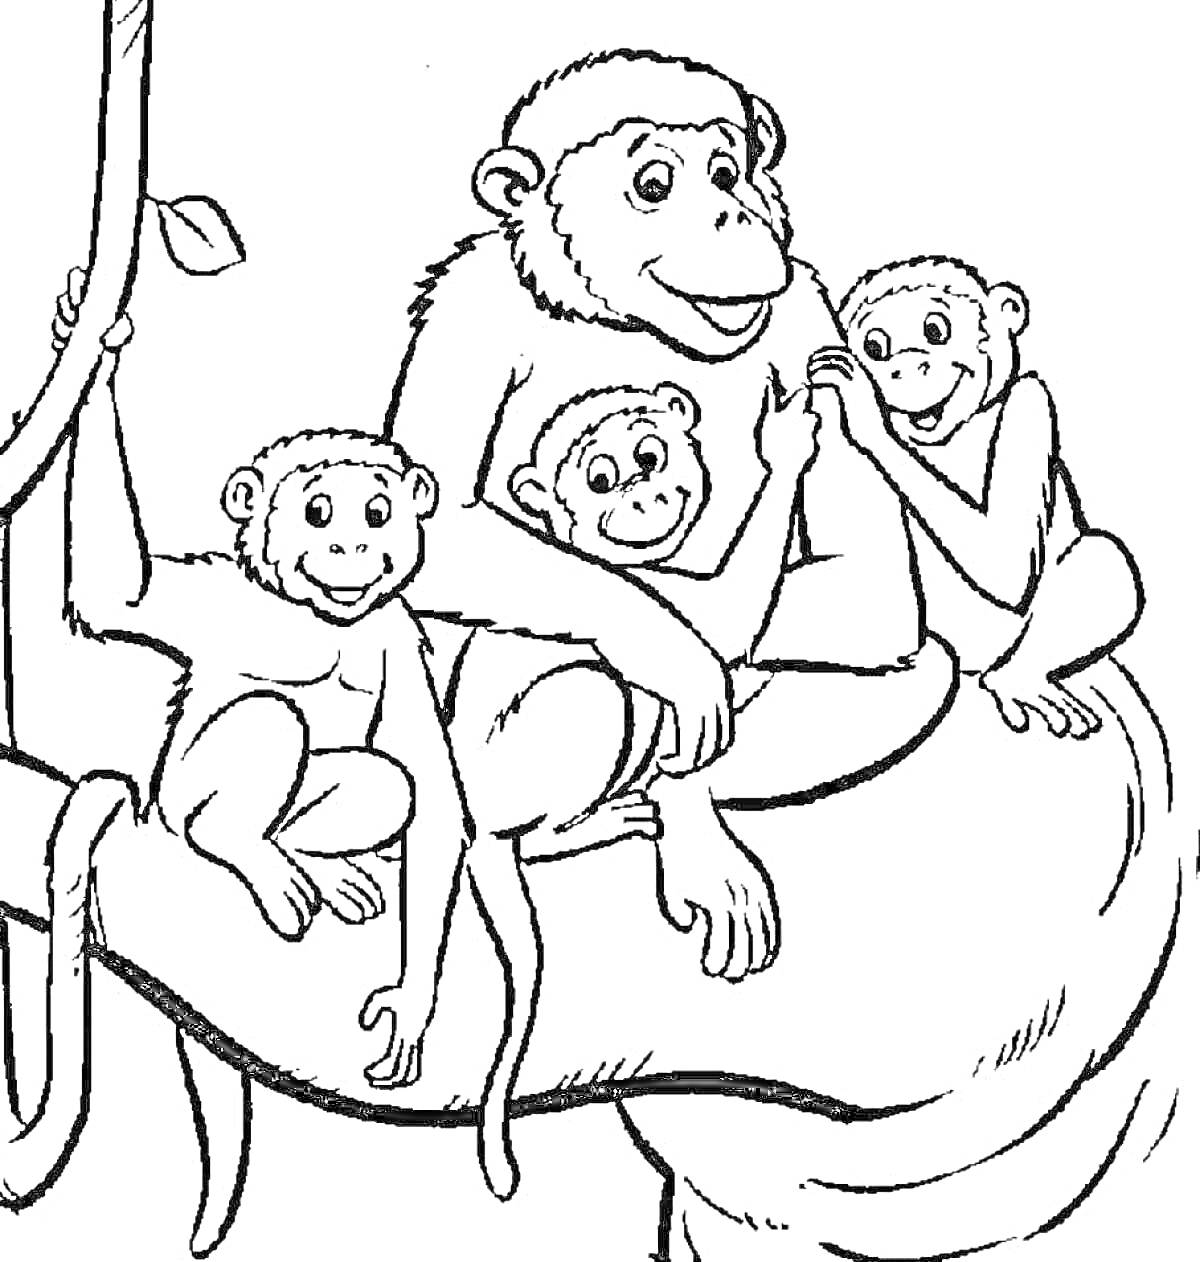 Раскраска Семья обезьянок на ветке дерева